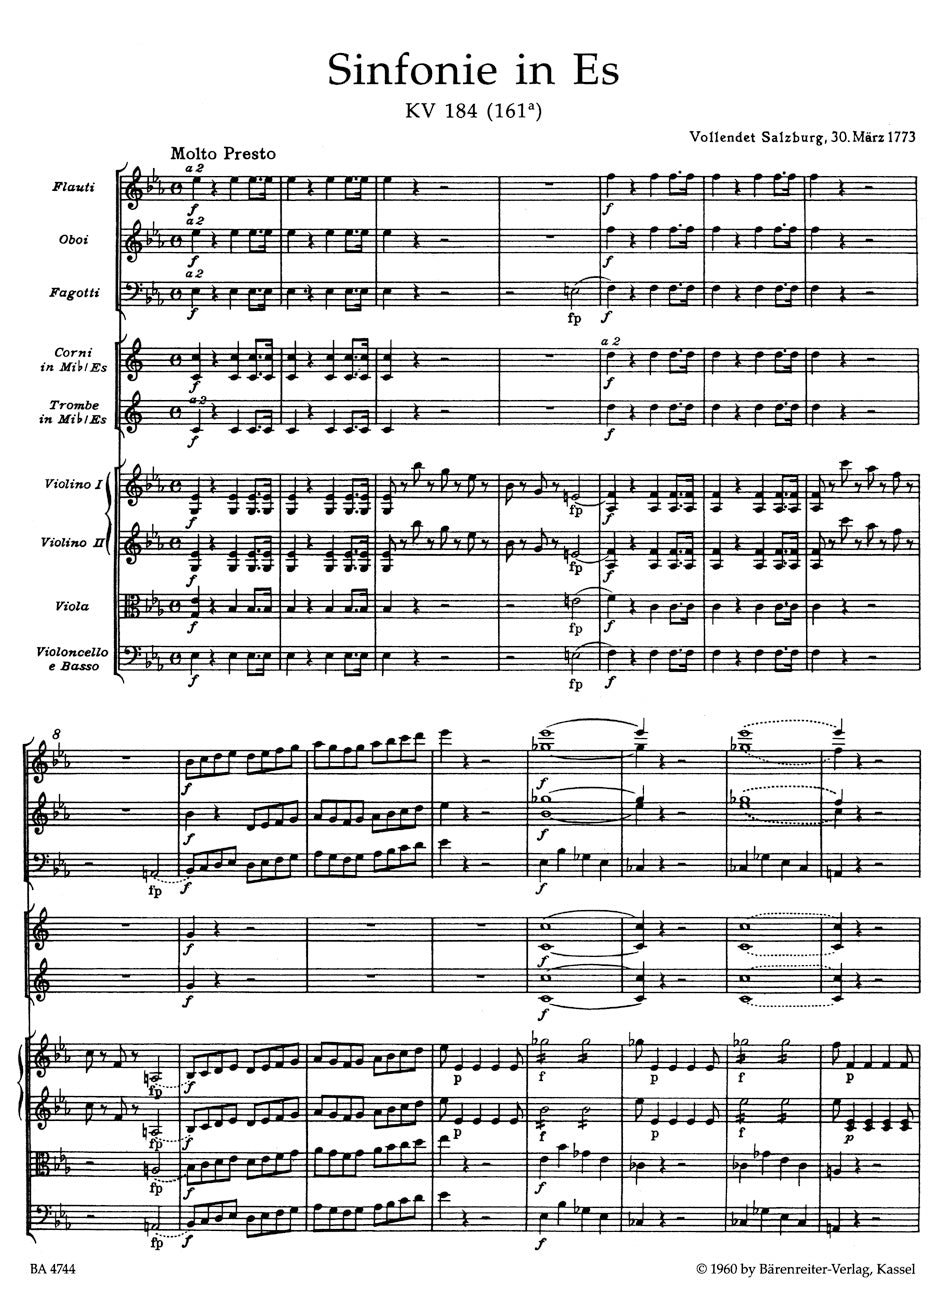 Mozart Symphony No. 26 E-flat major K. 184(166a)